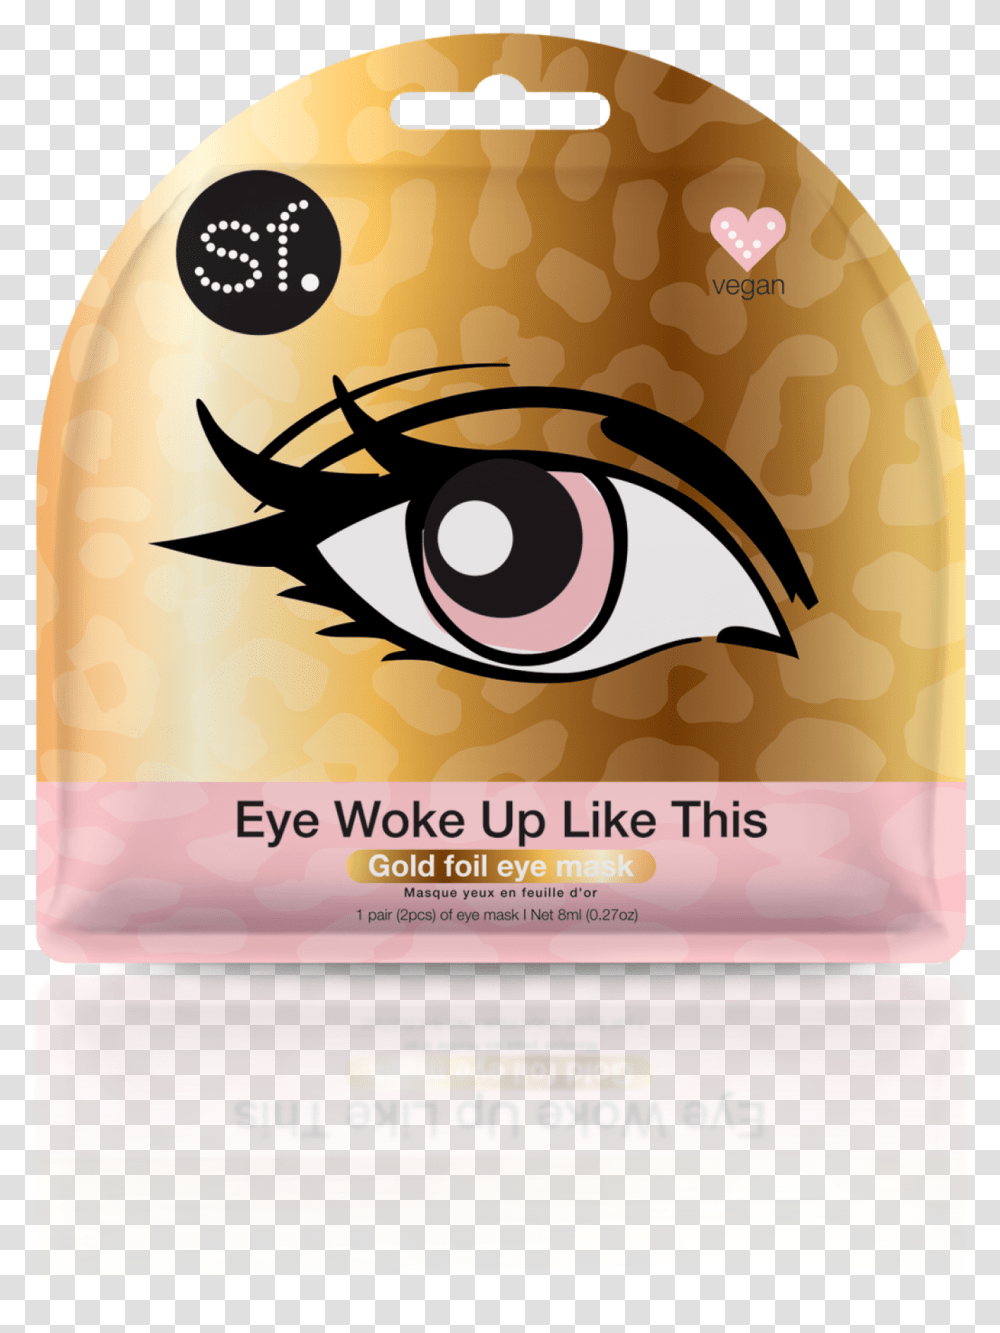 Woke Up Like This Gold Foil Eye Mask, Label, Plant, Food Transparent Png